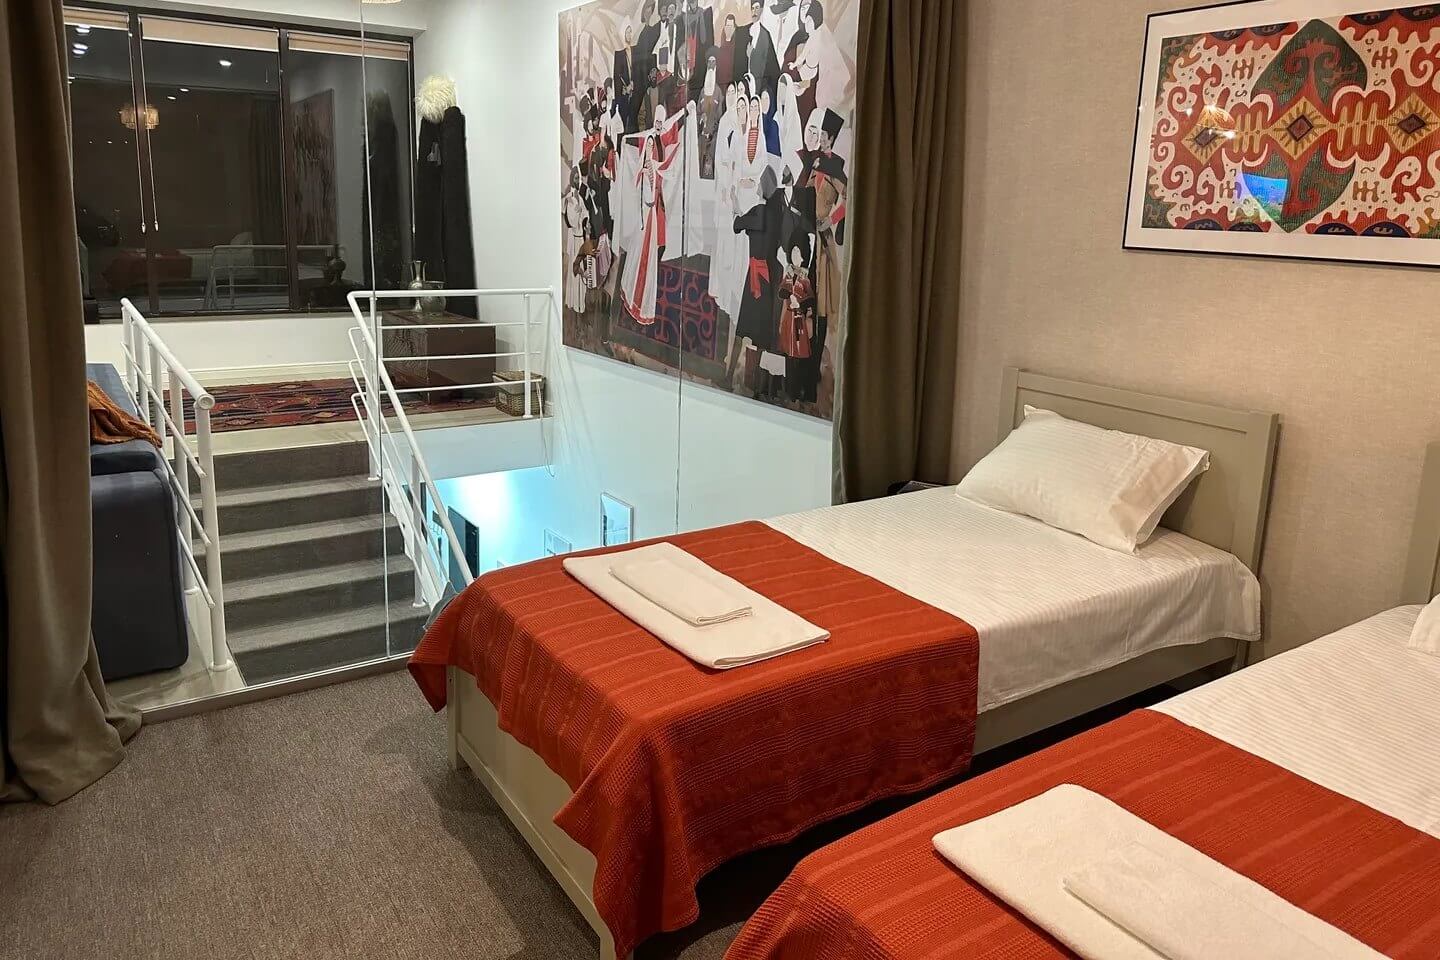 Зона спальни расположена на втором уровне. Кровати накрыты оранжевым саше.